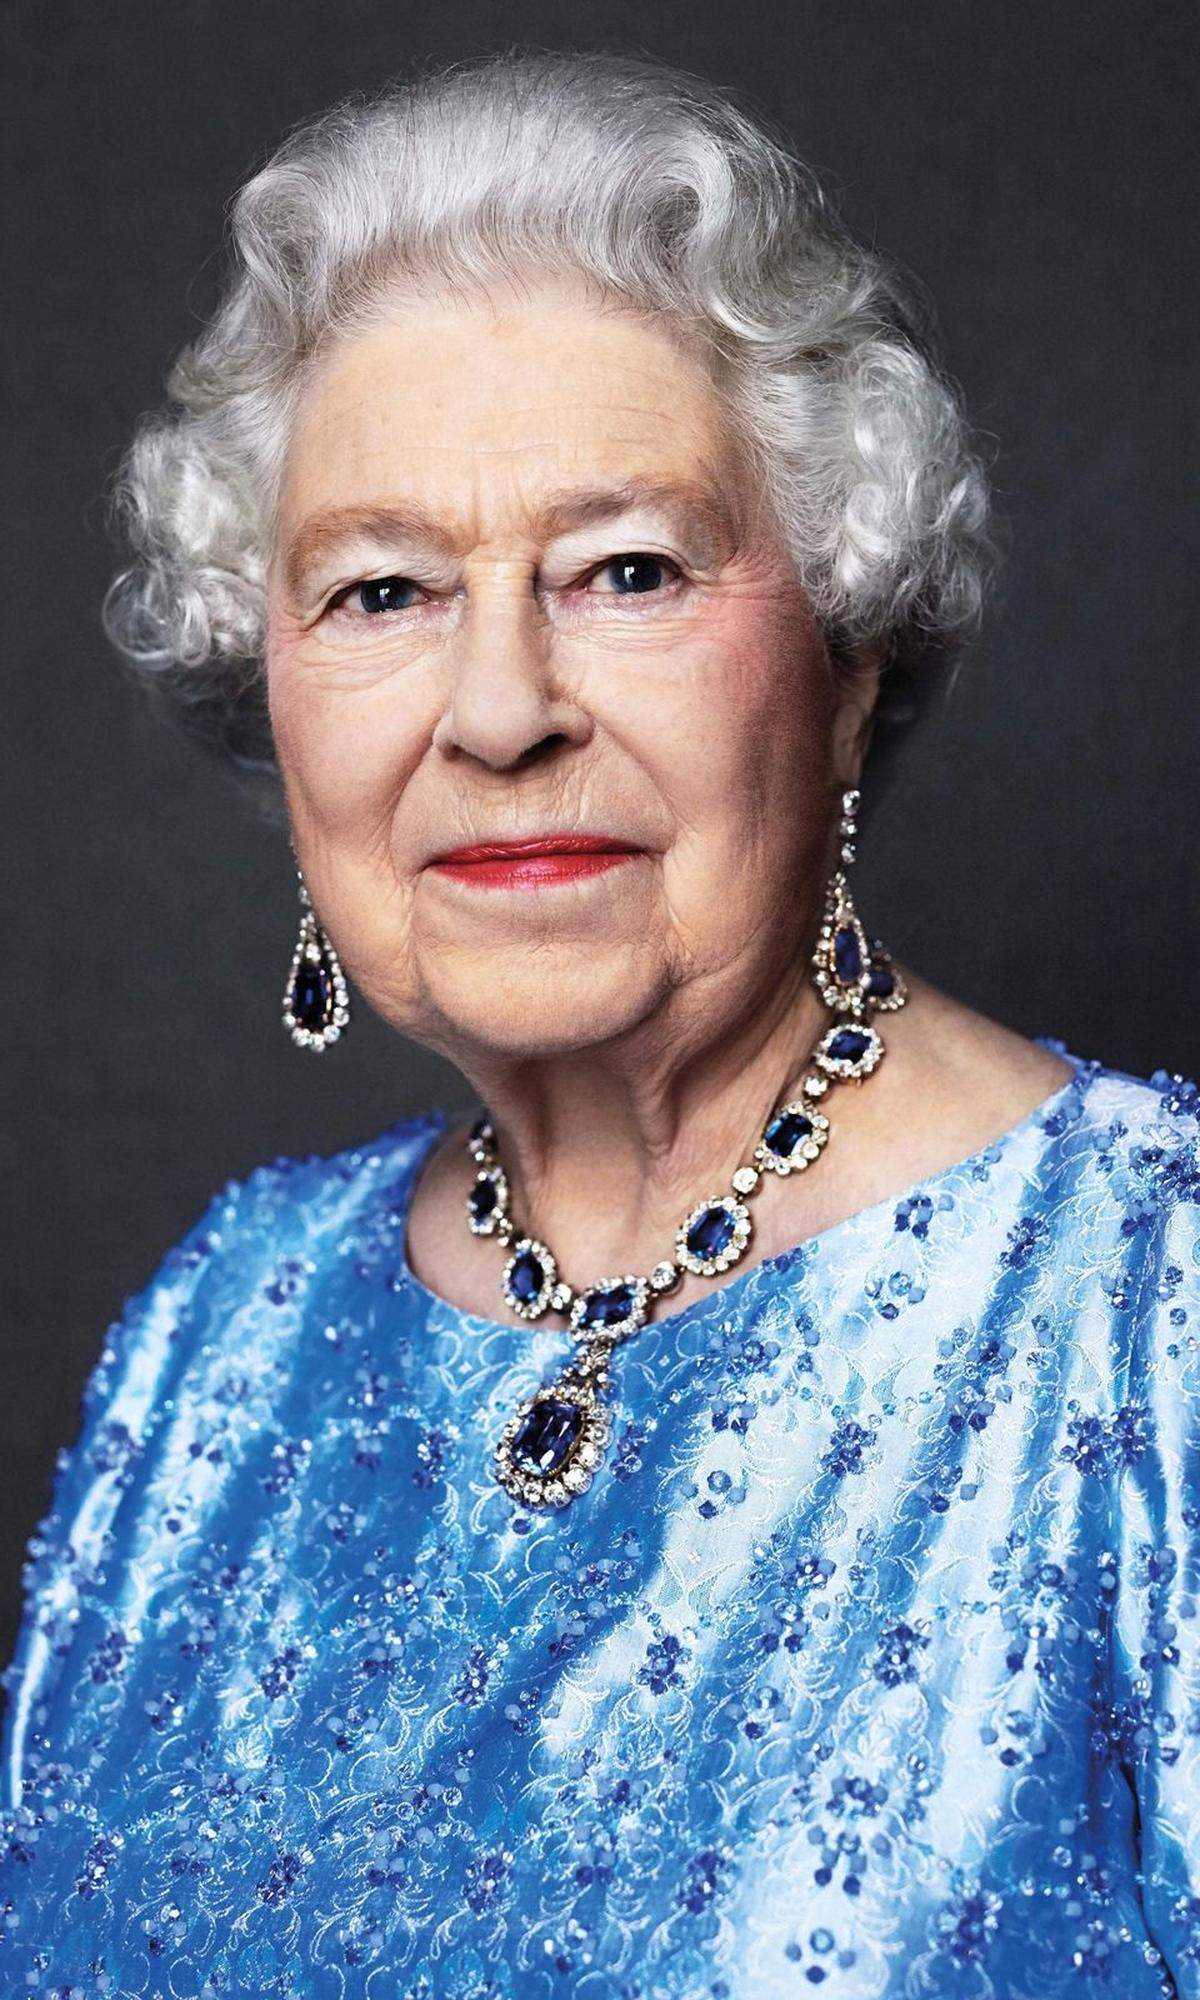 "Mein ganzes Leben, sollte es kurz oder lang werden", versprach die spätere Königin Elizabeth II. an ihrem 21. Geburtstag, wolle sie ihren Untertanen widmen. Insgesamt war die britische Königin 70 Jahre auf dem Thron - und damit die am längsten amtierende Monarchin.  